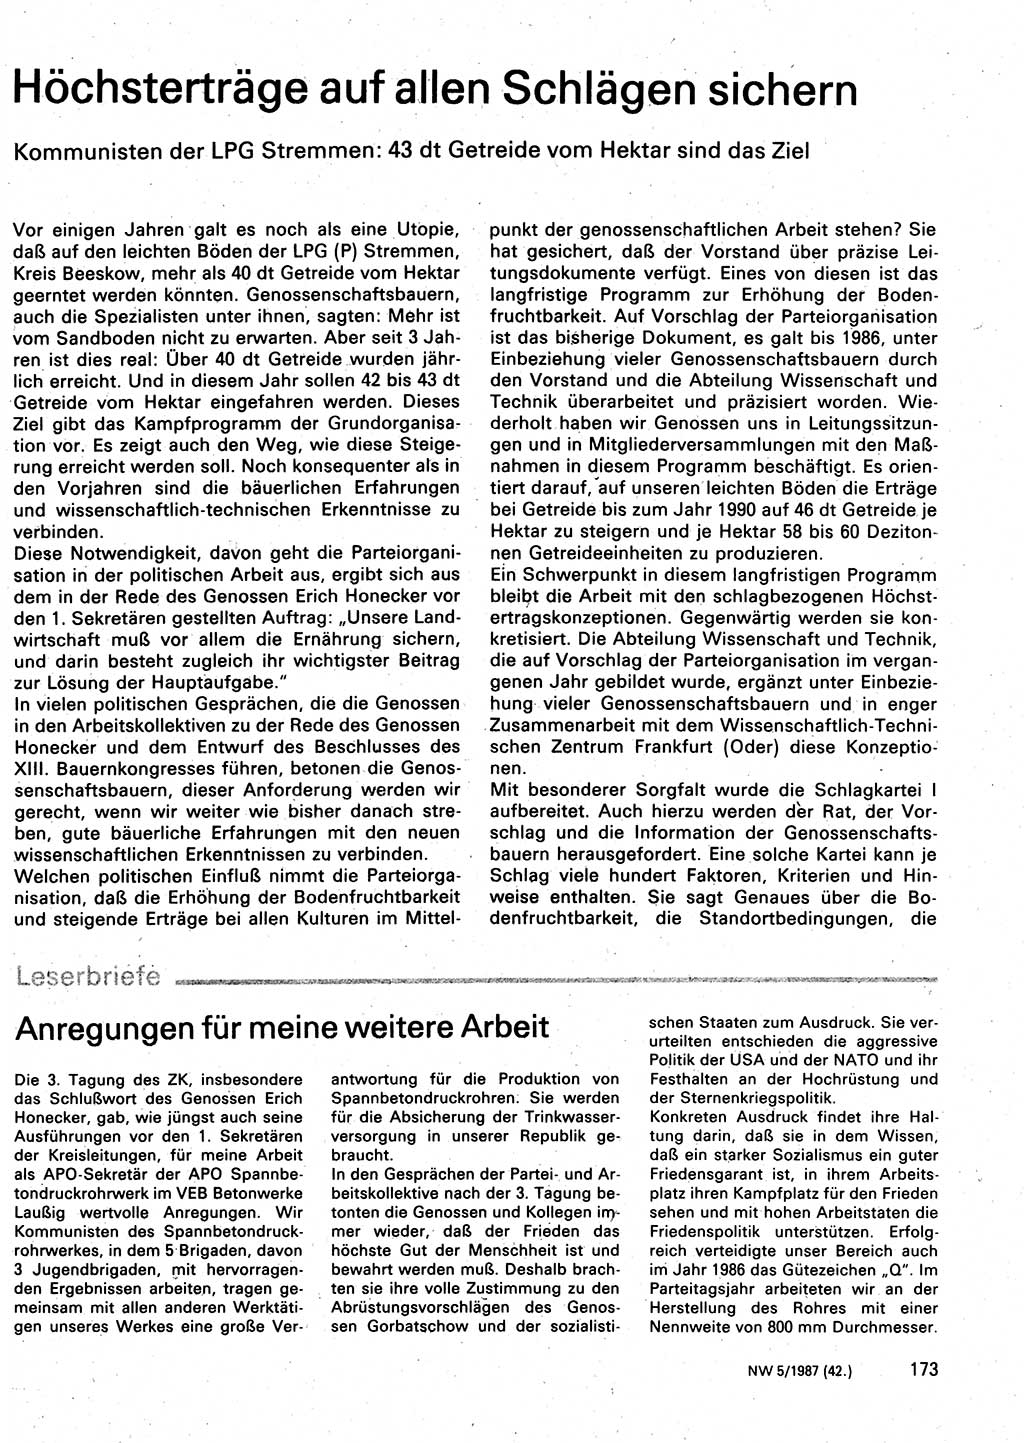 Neuer Weg (NW), Organ des Zentralkomitees (ZK) der SED (Sozialistische Einheitspartei Deutschlands) für Fragen des Parteilebens, 42. Jahrgang [Deutsche Demokratische Republik (DDR)] 1987, Seite 173 (NW ZK SED DDR 1987, S. 173)